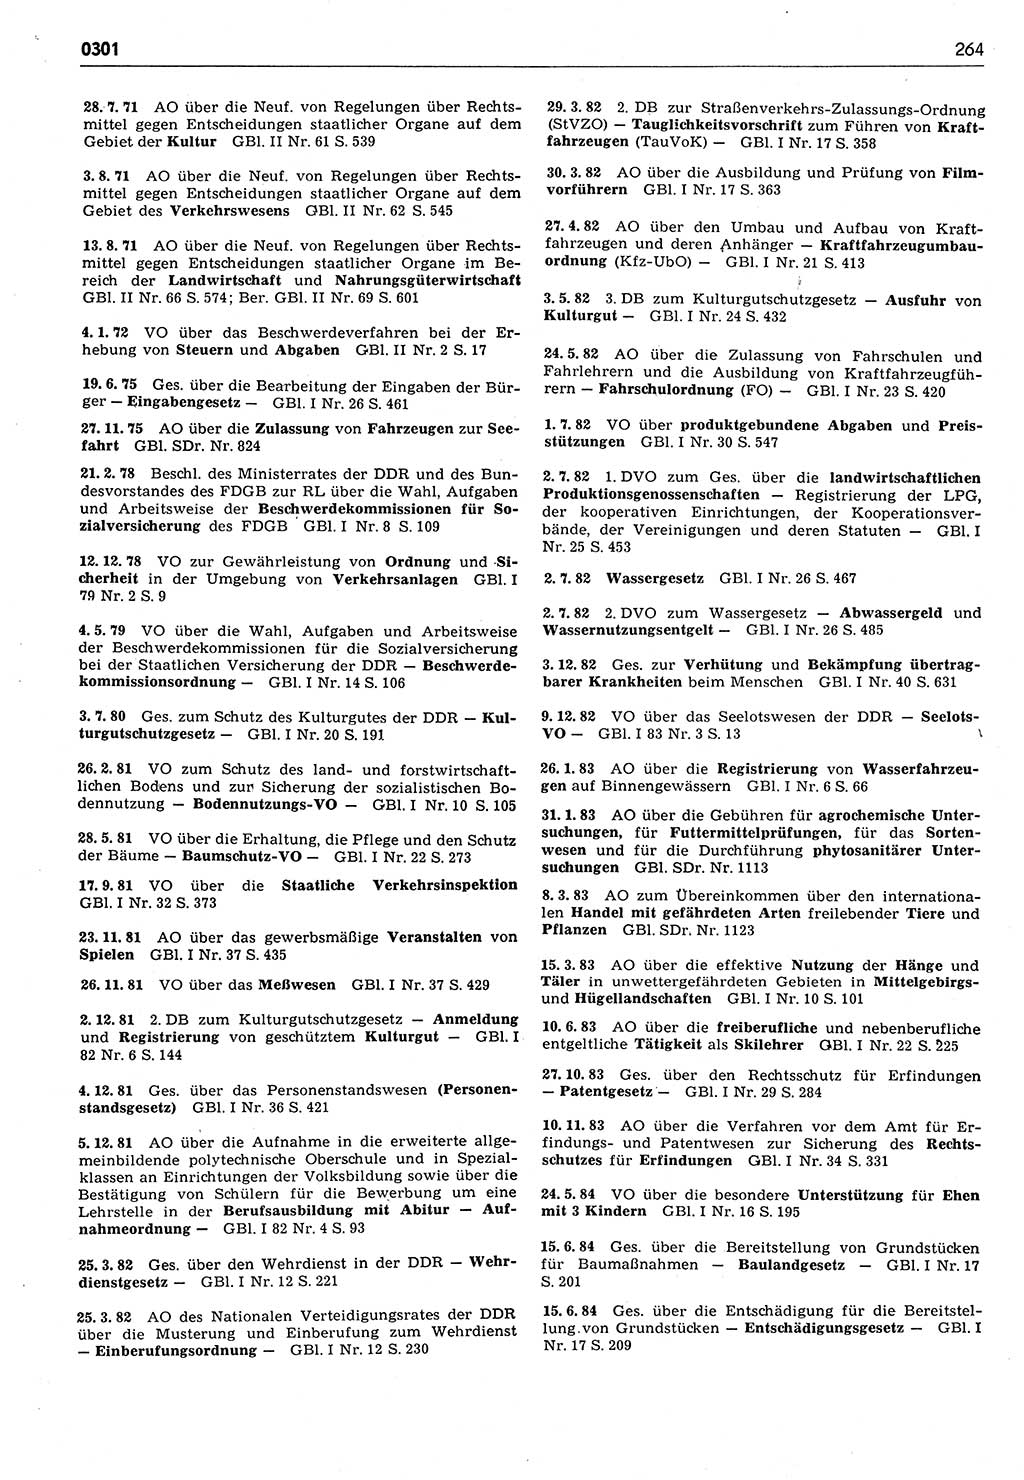 Das geltende Recht der Deutschen Demokratischen Republik (DDR) 1949-1988, Seite 264 (Gelt. R. DDR 1949-1988, S. 264)